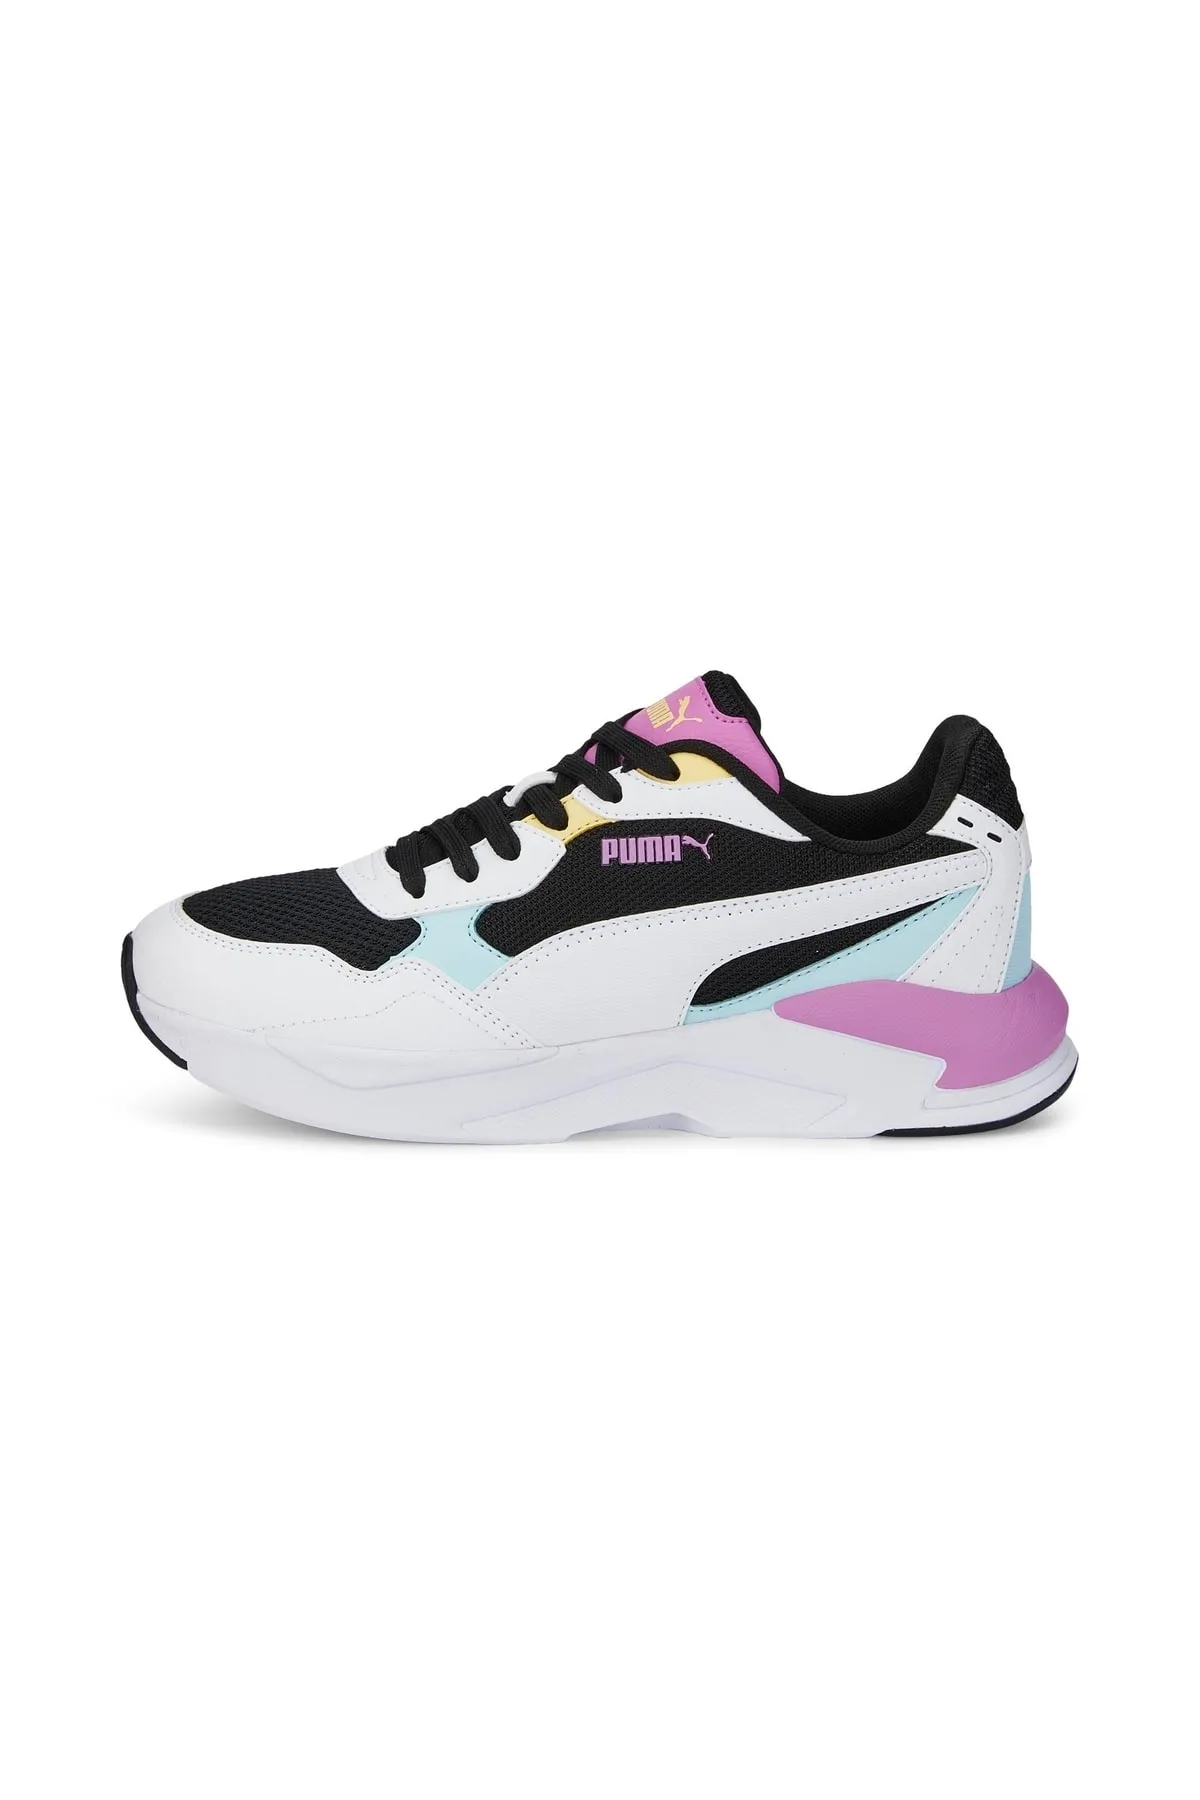 PUMA - X-Ray Speed Lite - Kadın Sneaker Ayakkabı 384639 -Siyah